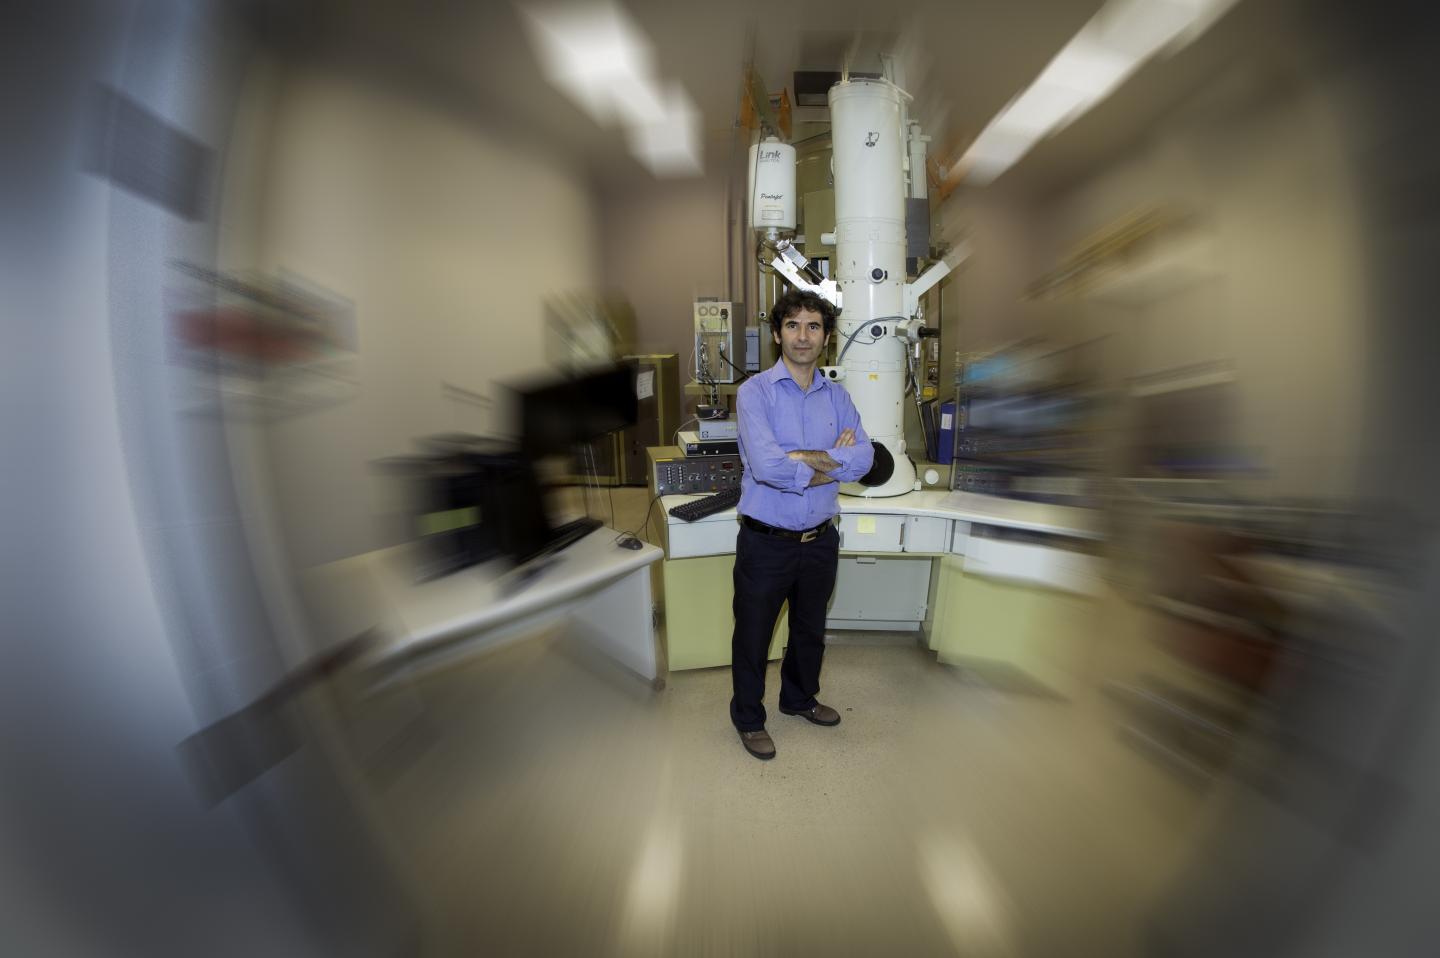 Durdu Güney en su laboratorio, en el que él y su equipo trabajan en la creación de un "lente perfecta”. Fuente: Michigan Tech.